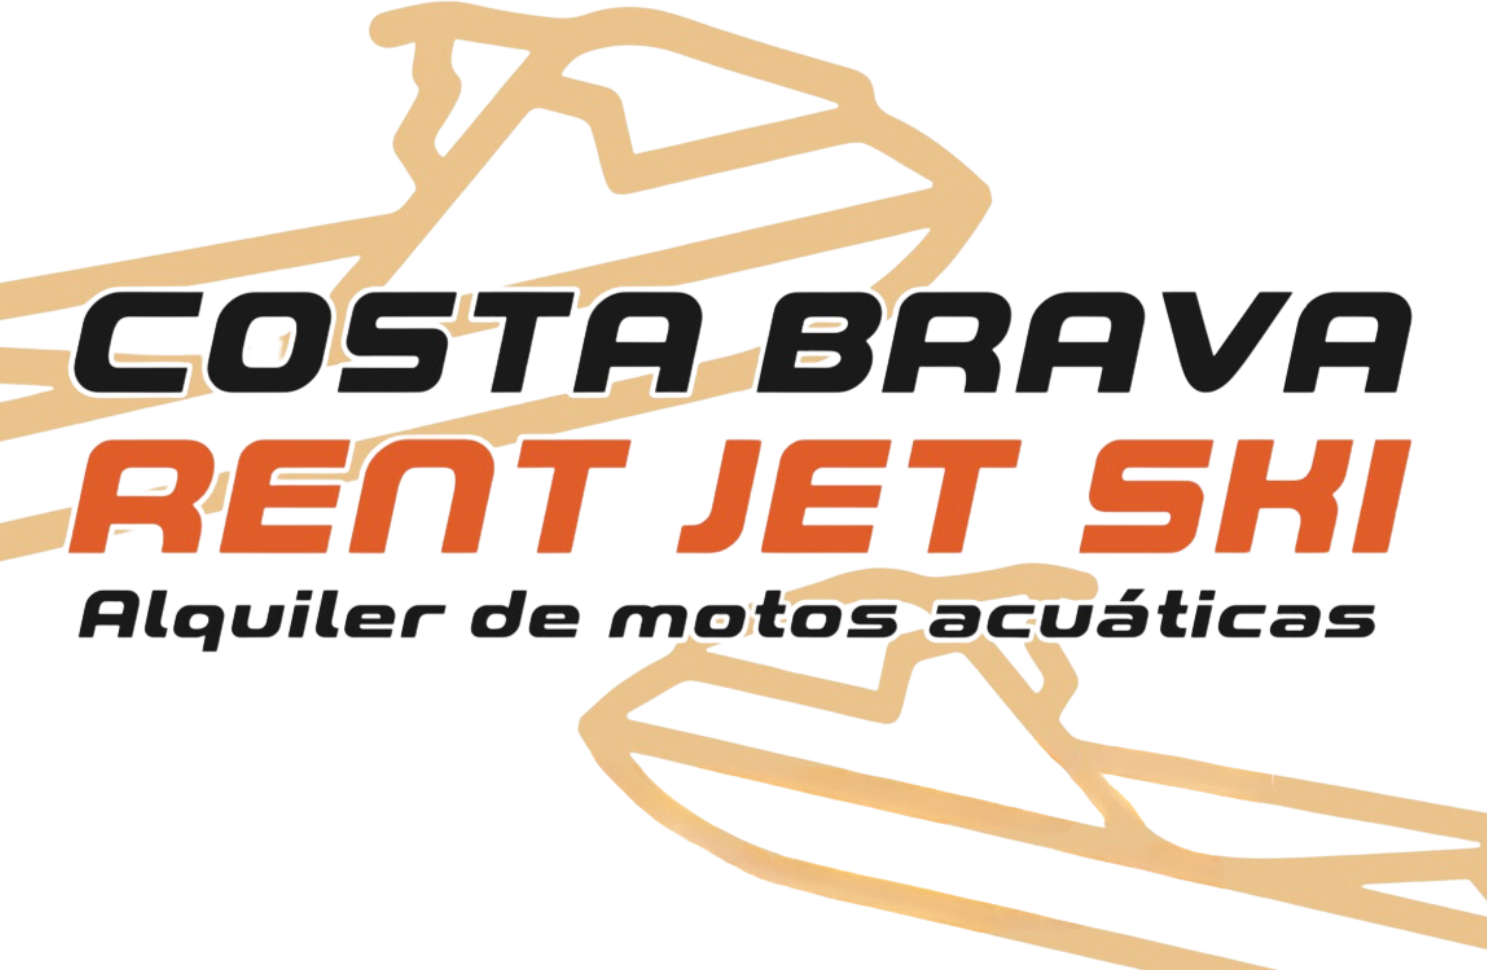 Costa Brava Rent Jet Ski